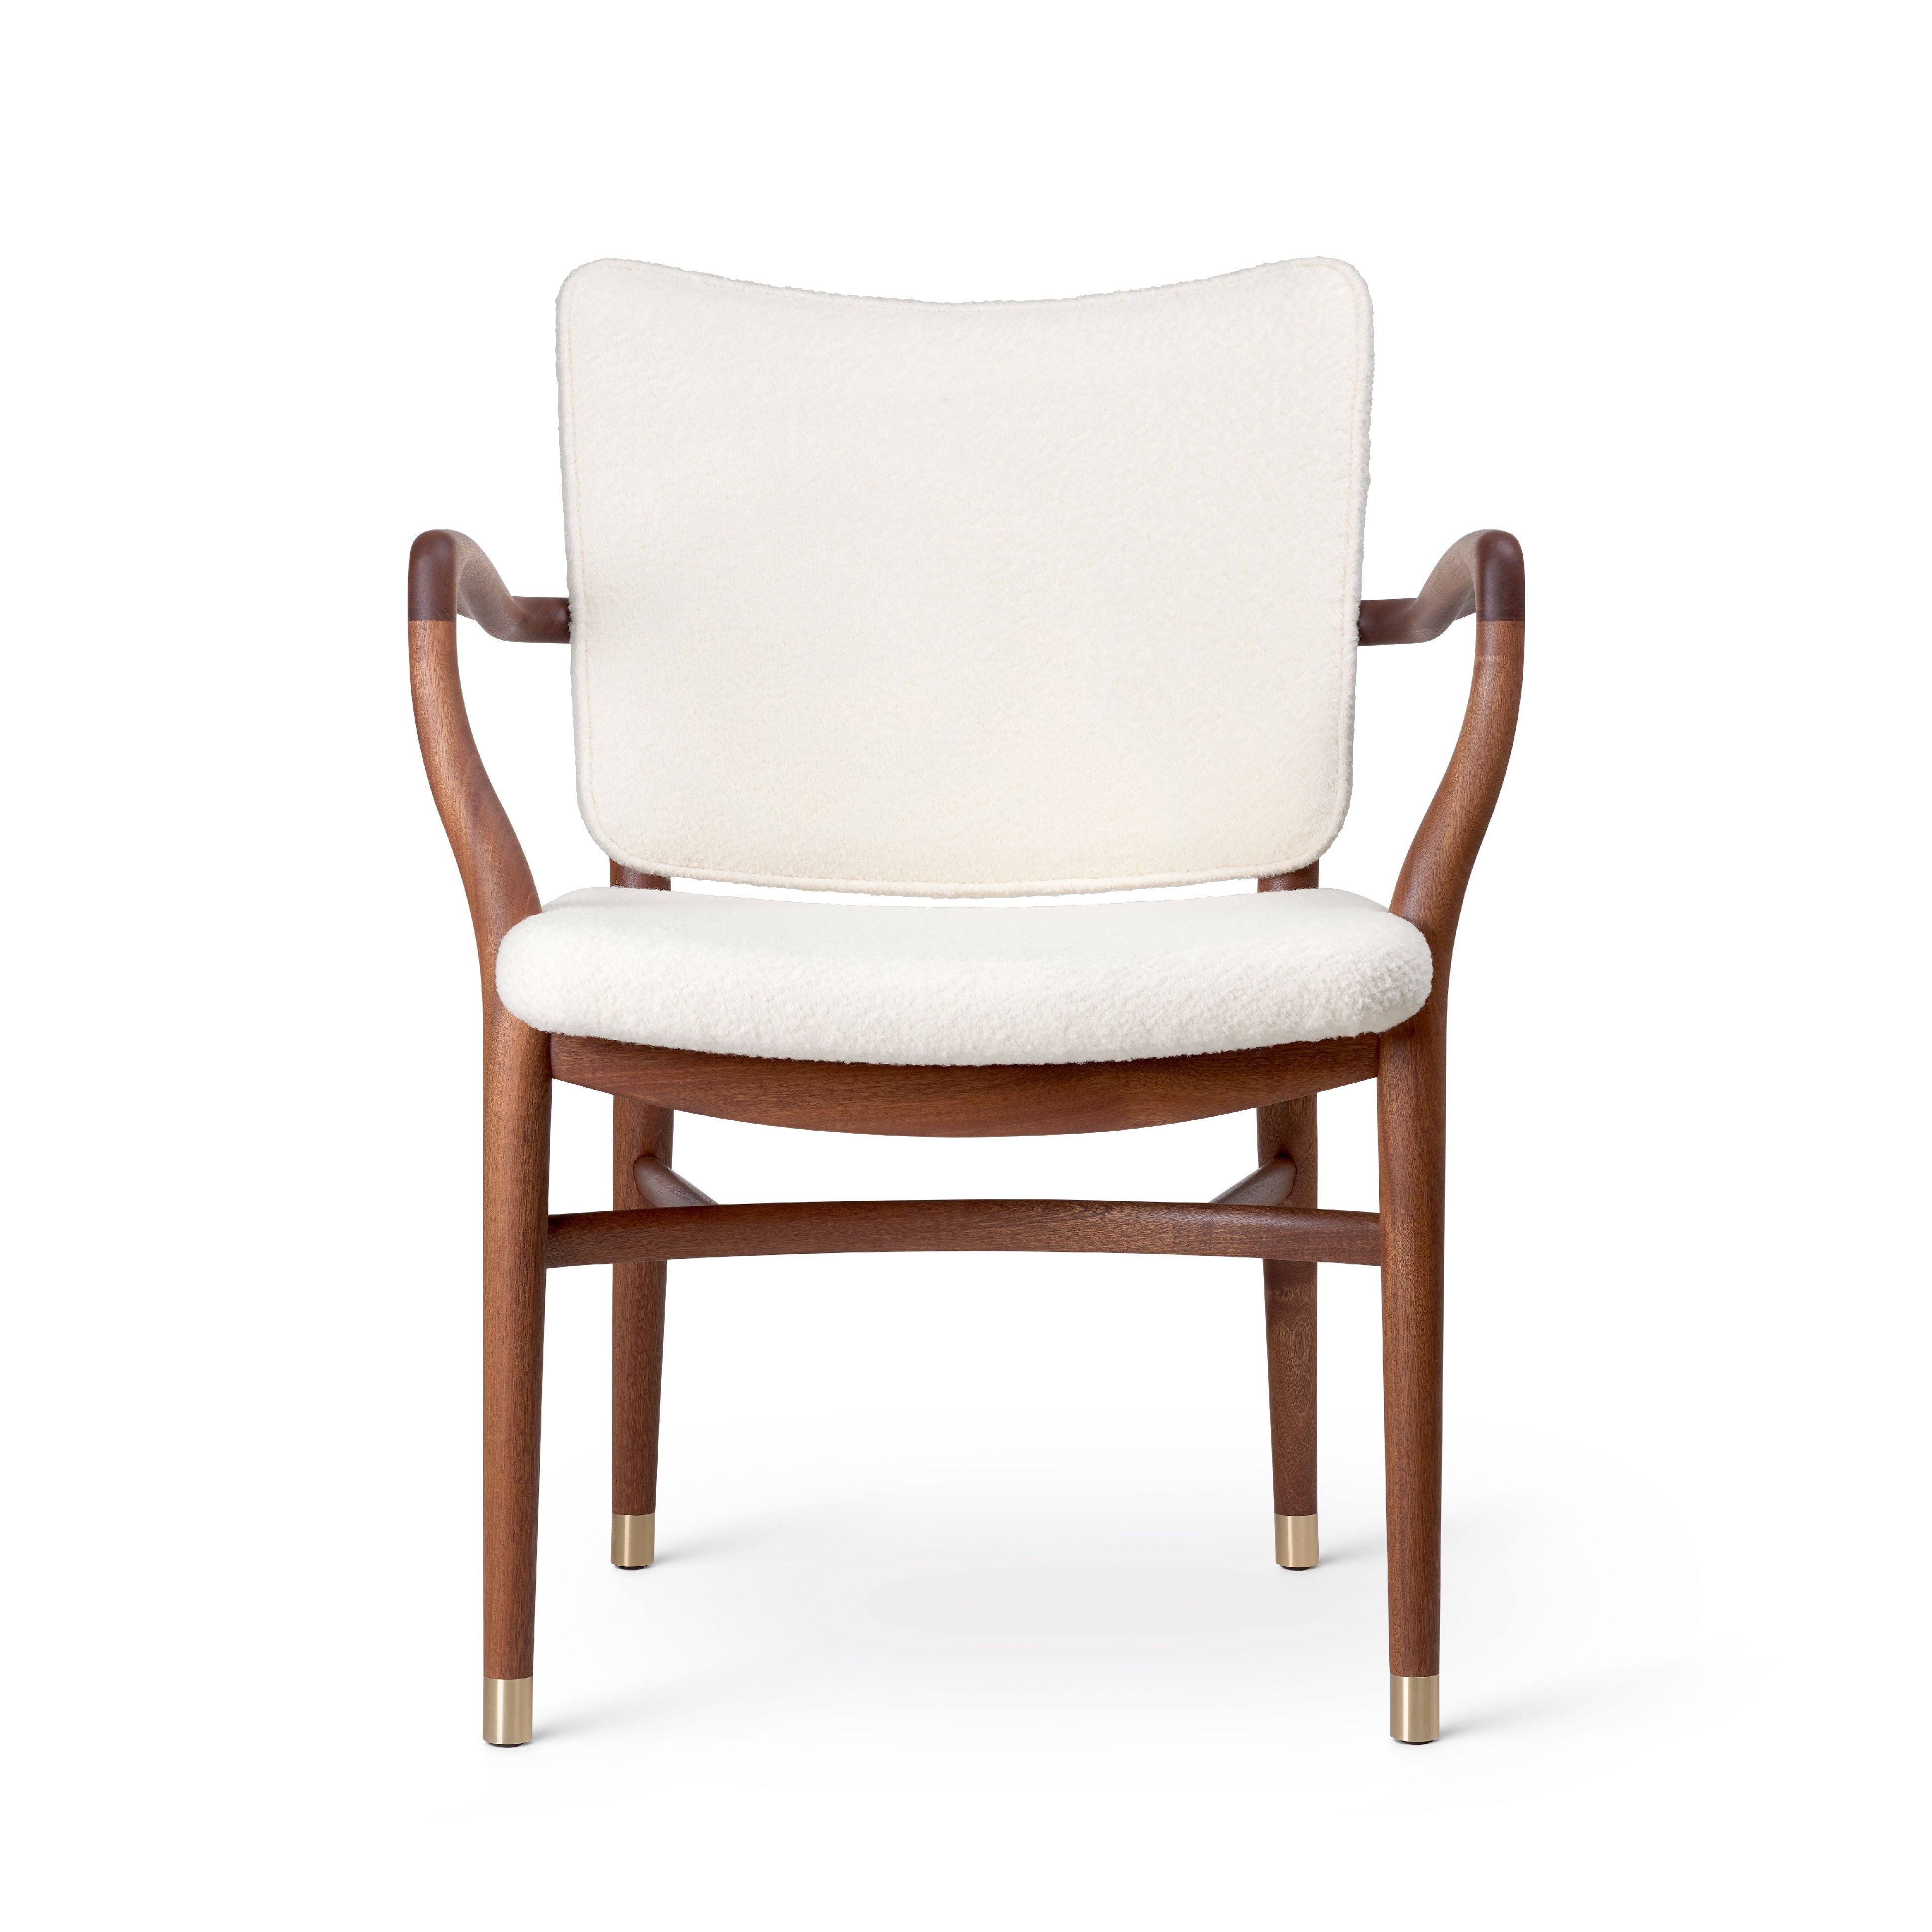 Carl Hansen VLA61 Monar Ch -fauteuil, mahonie olie/baru 0200 textiel